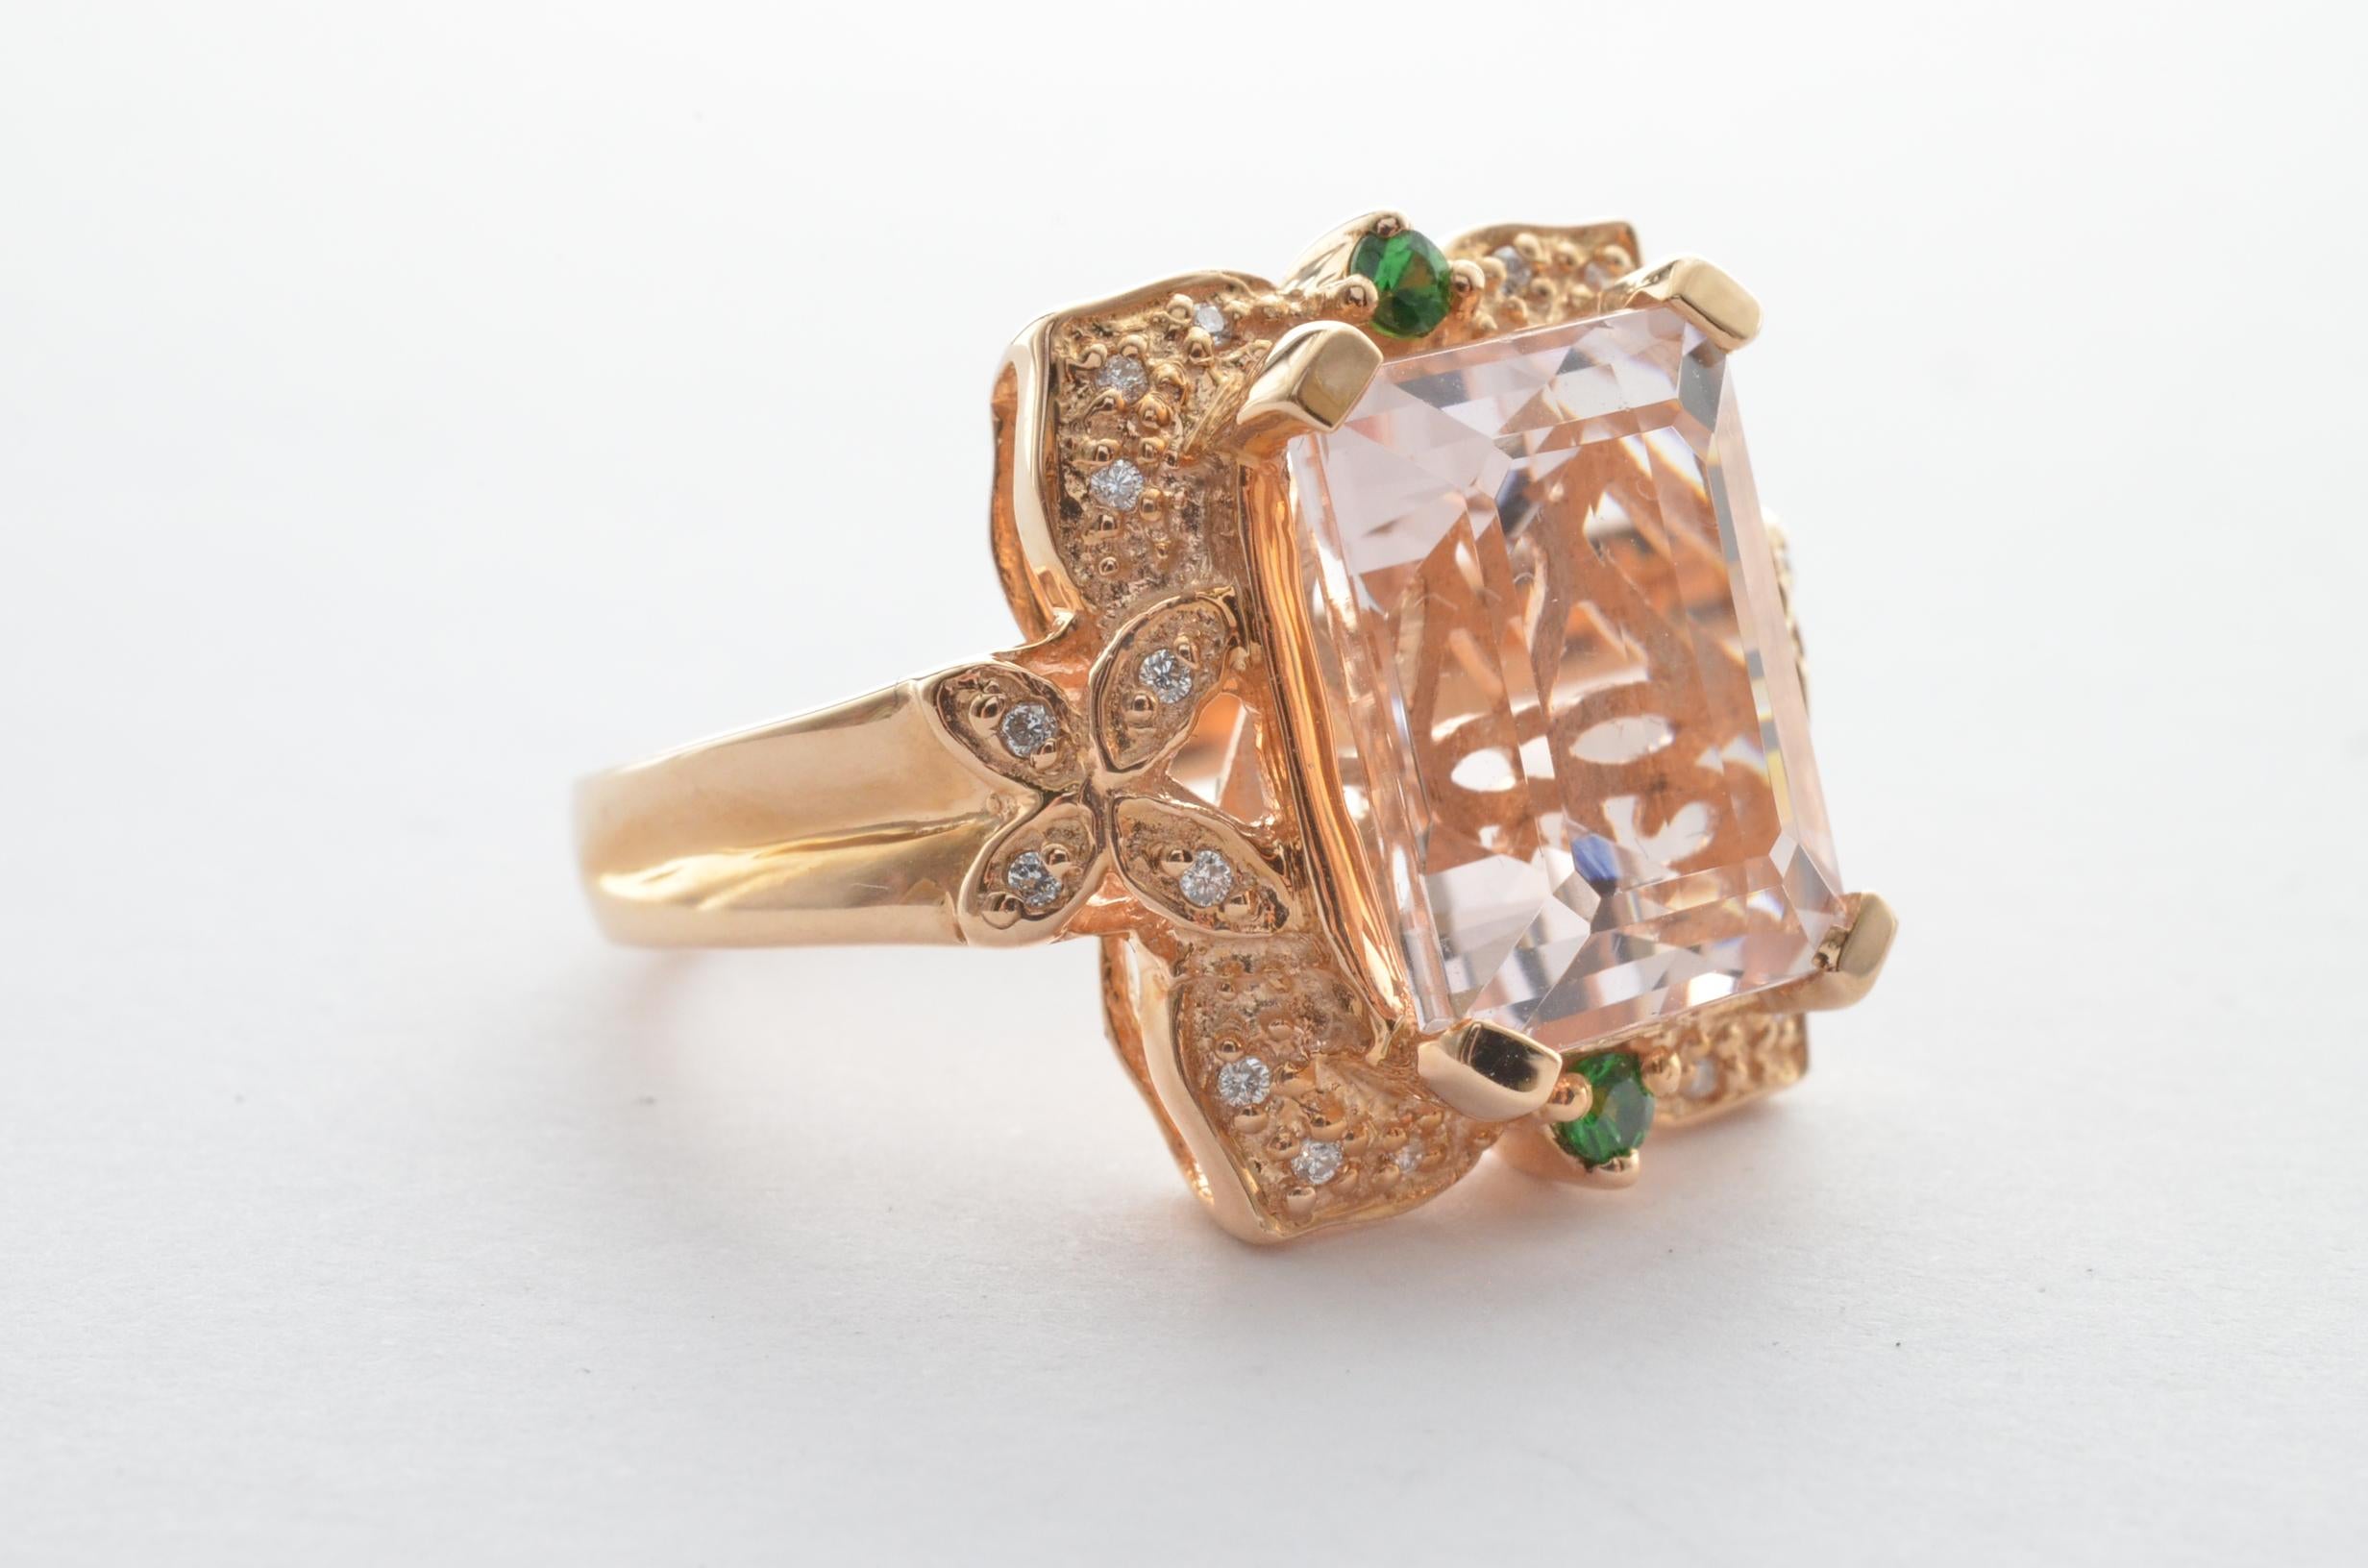 Diese Kollektion bietet eine Reihe von prächtigen Morganiten! Die mit Diamanten besetzten Ringe sind aus Roségold gefertigt und haben ein klassisches und elegantes Aussehen. 

Klassischer Morganitring aus 14 Karat Roségold mit Tsavorit und schwarzen